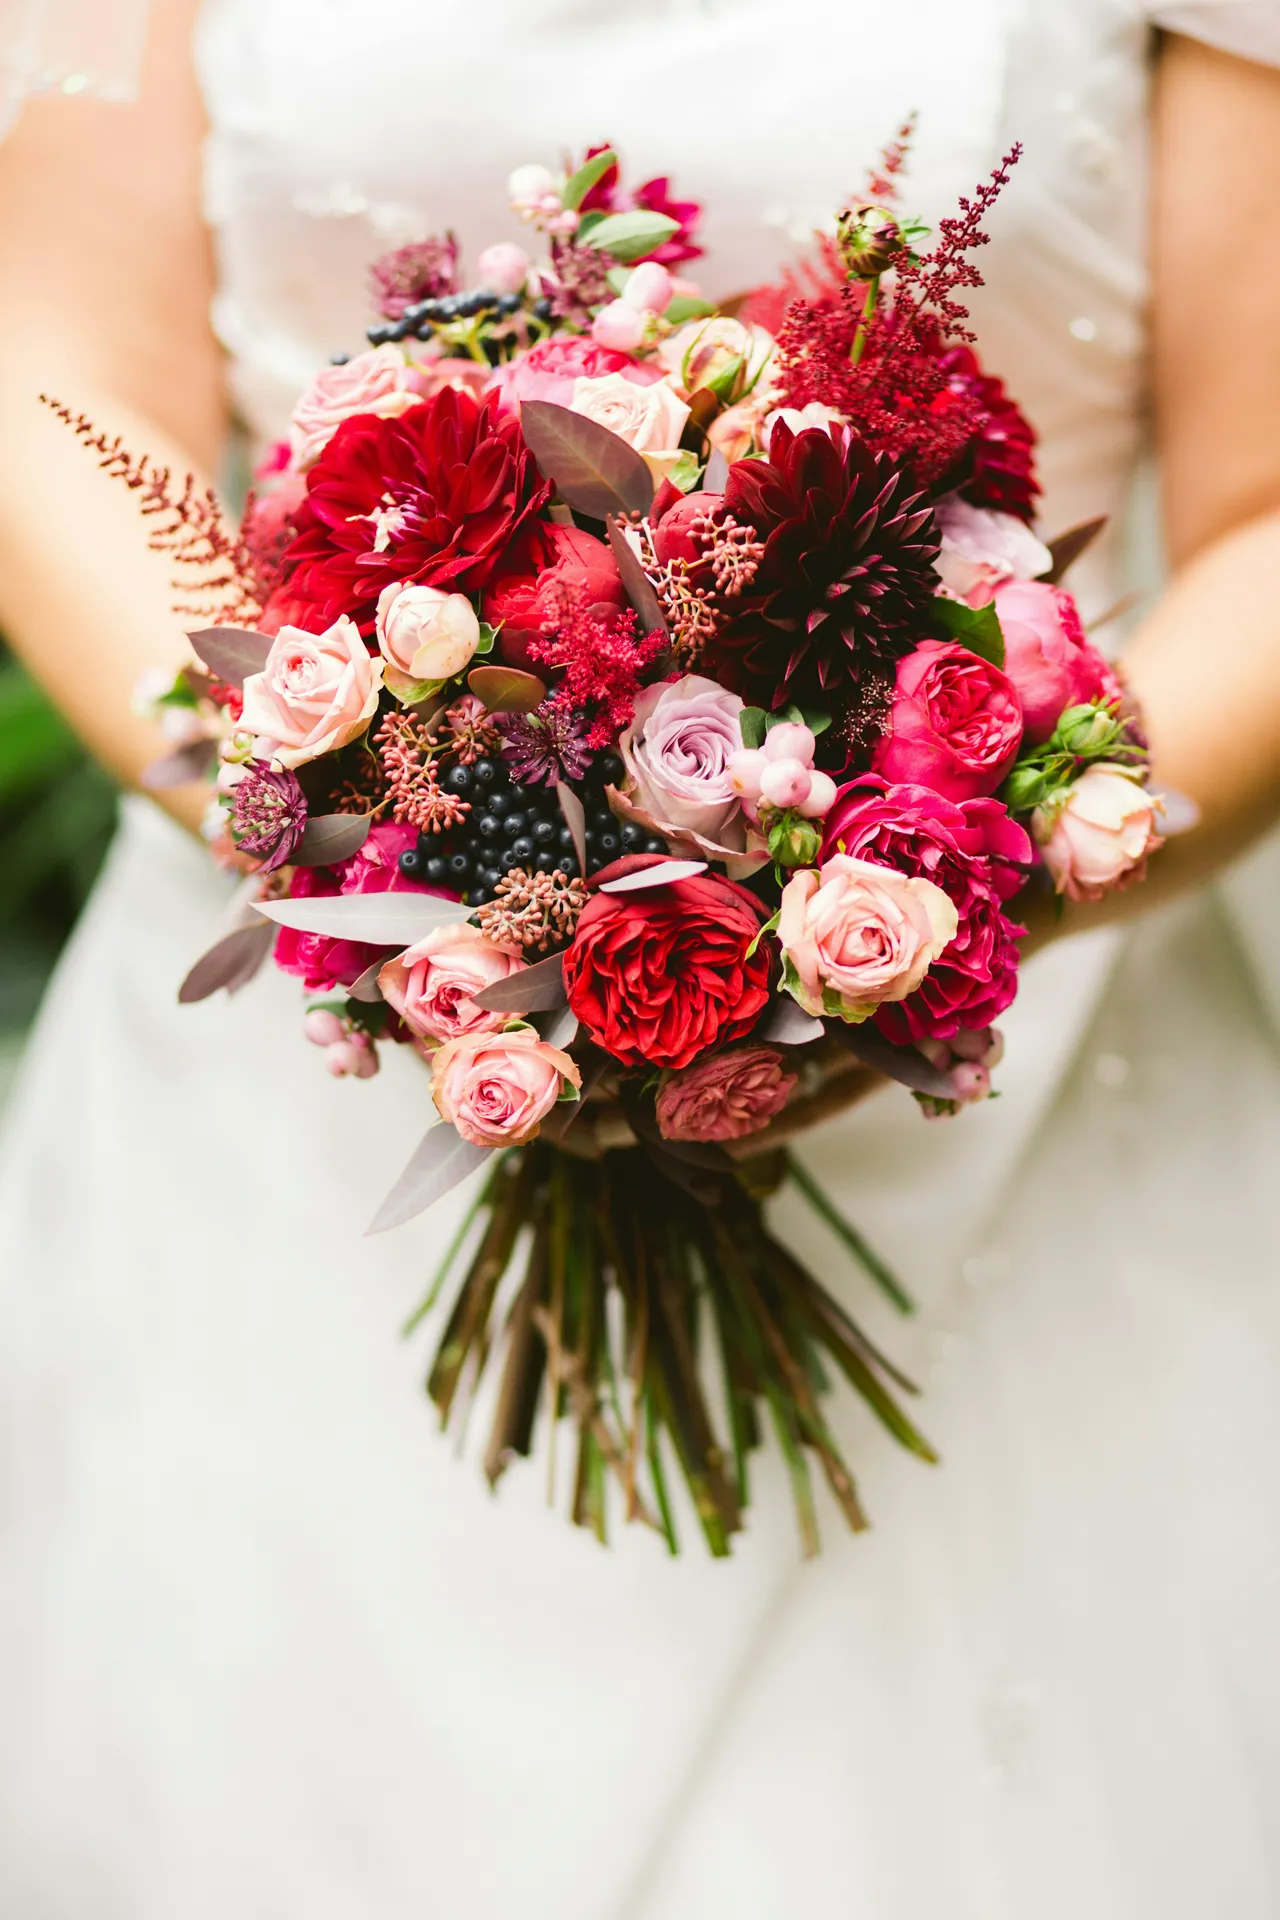 Memilih Bunga Pernikahan untuk Hari Istimewa